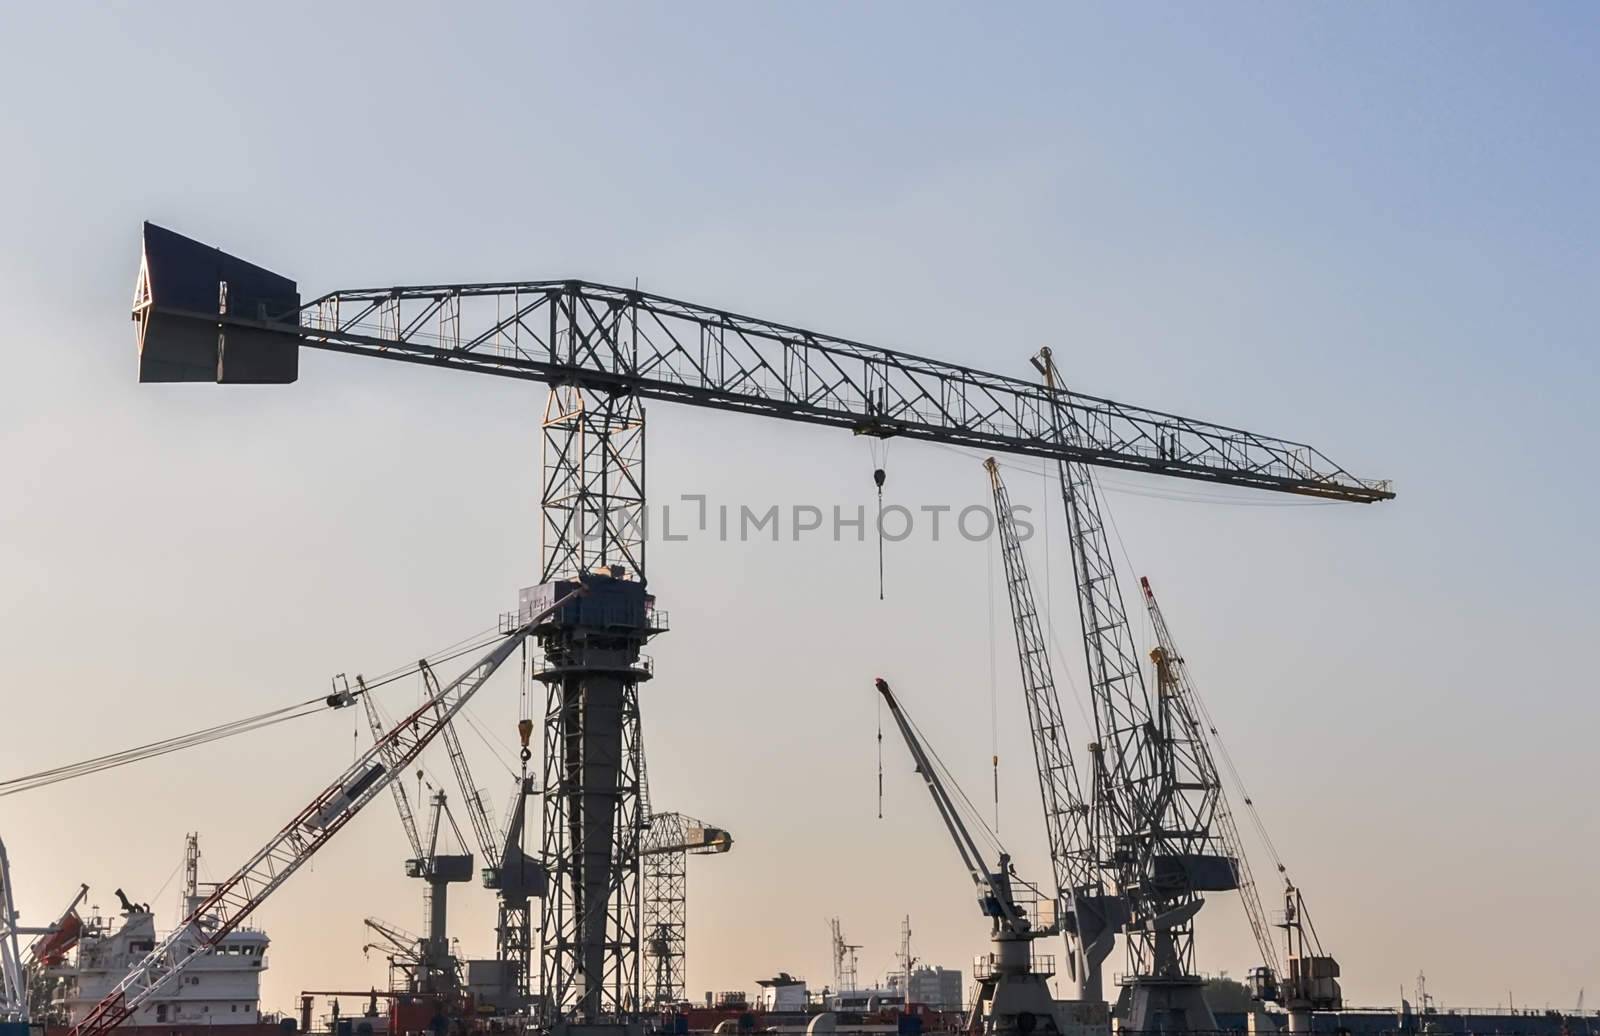 sea cargo port large cranes by vlaru